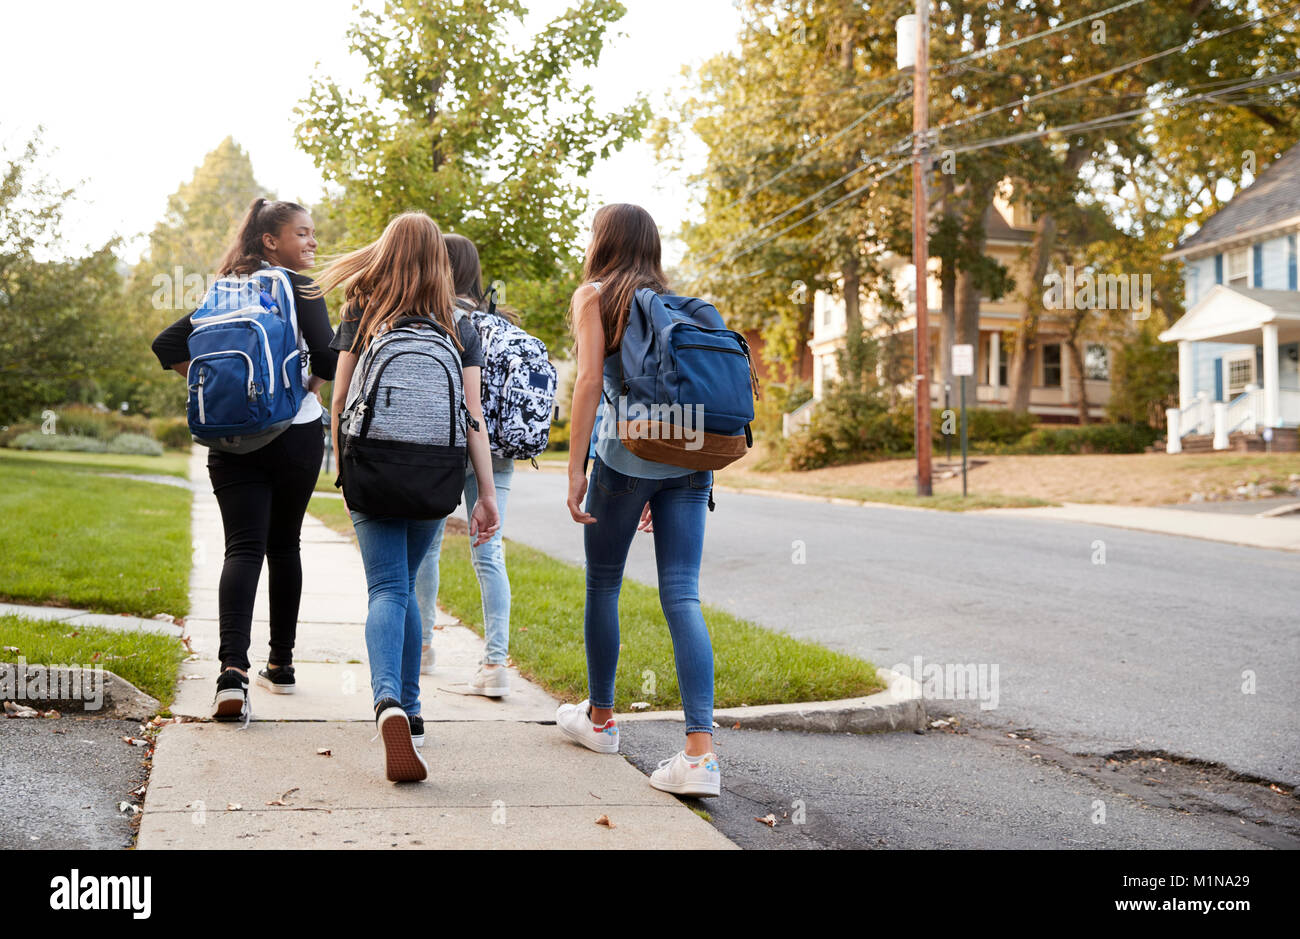 Quatre jeunes filles de l'adolescence à l'école à pied ensemble, vue arrière Banque D'Images